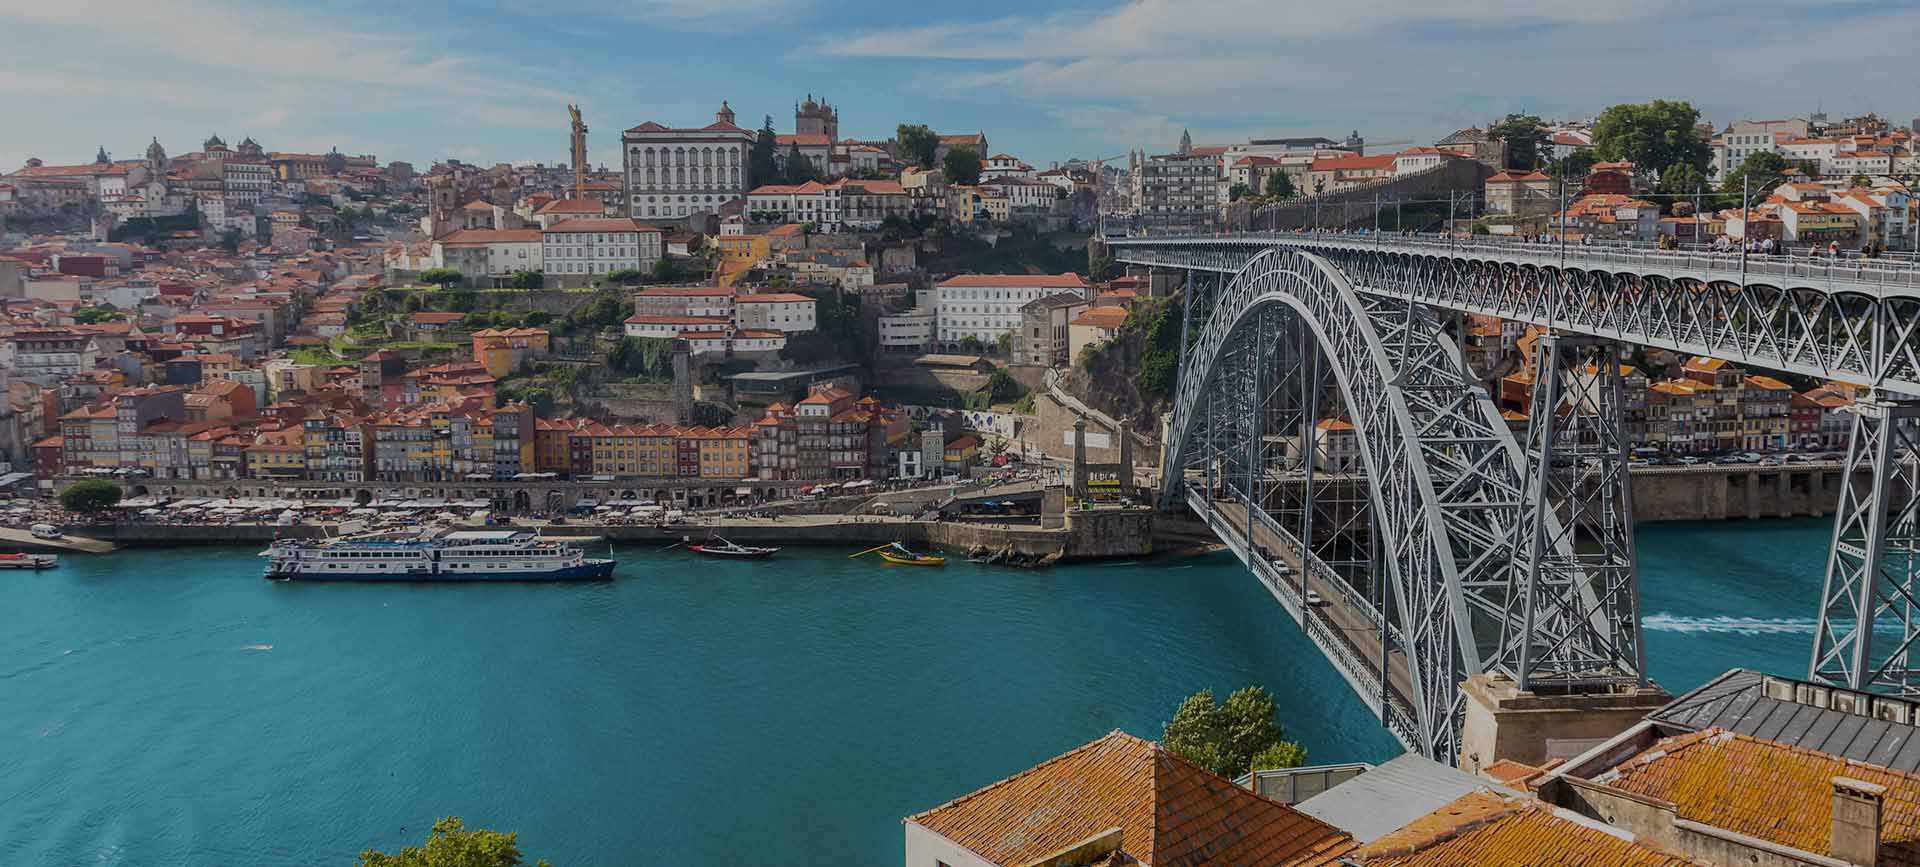 Trabalhar no Porto: Conhece esta cidade histórica!